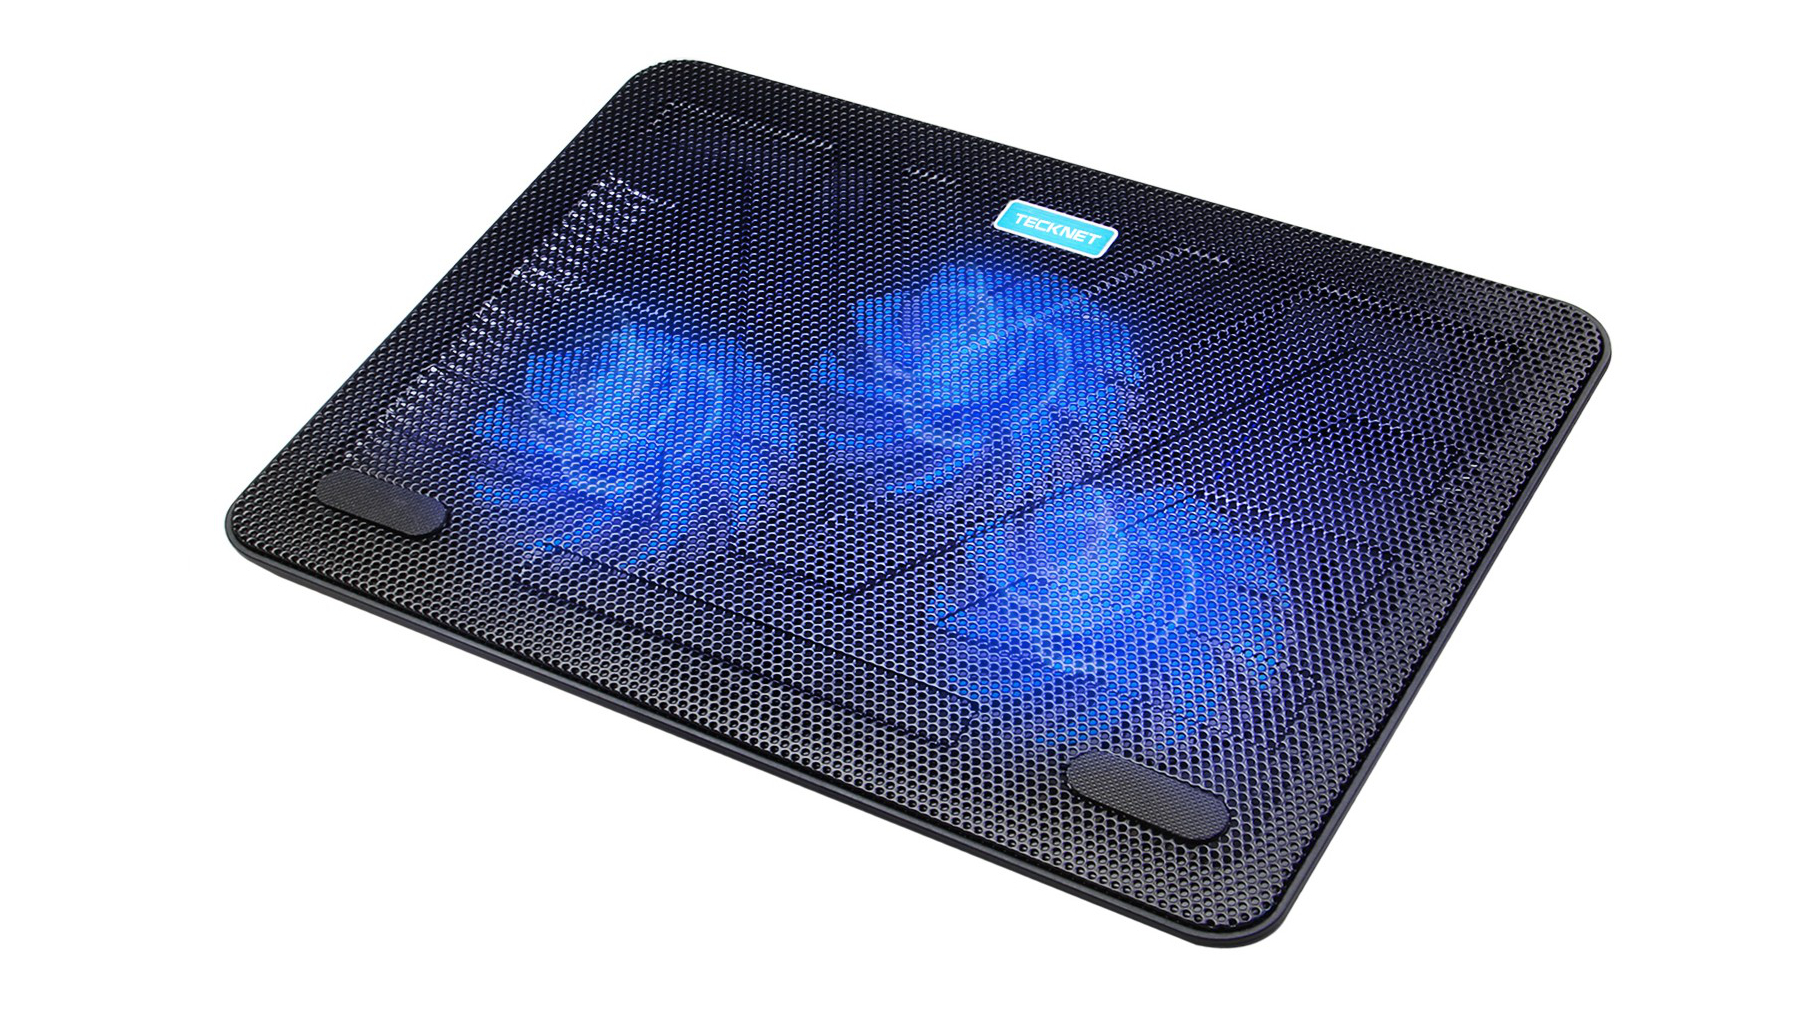 Bestes Laptop-Kühlpad: TeckNet N8 Laptop Cooling Pad